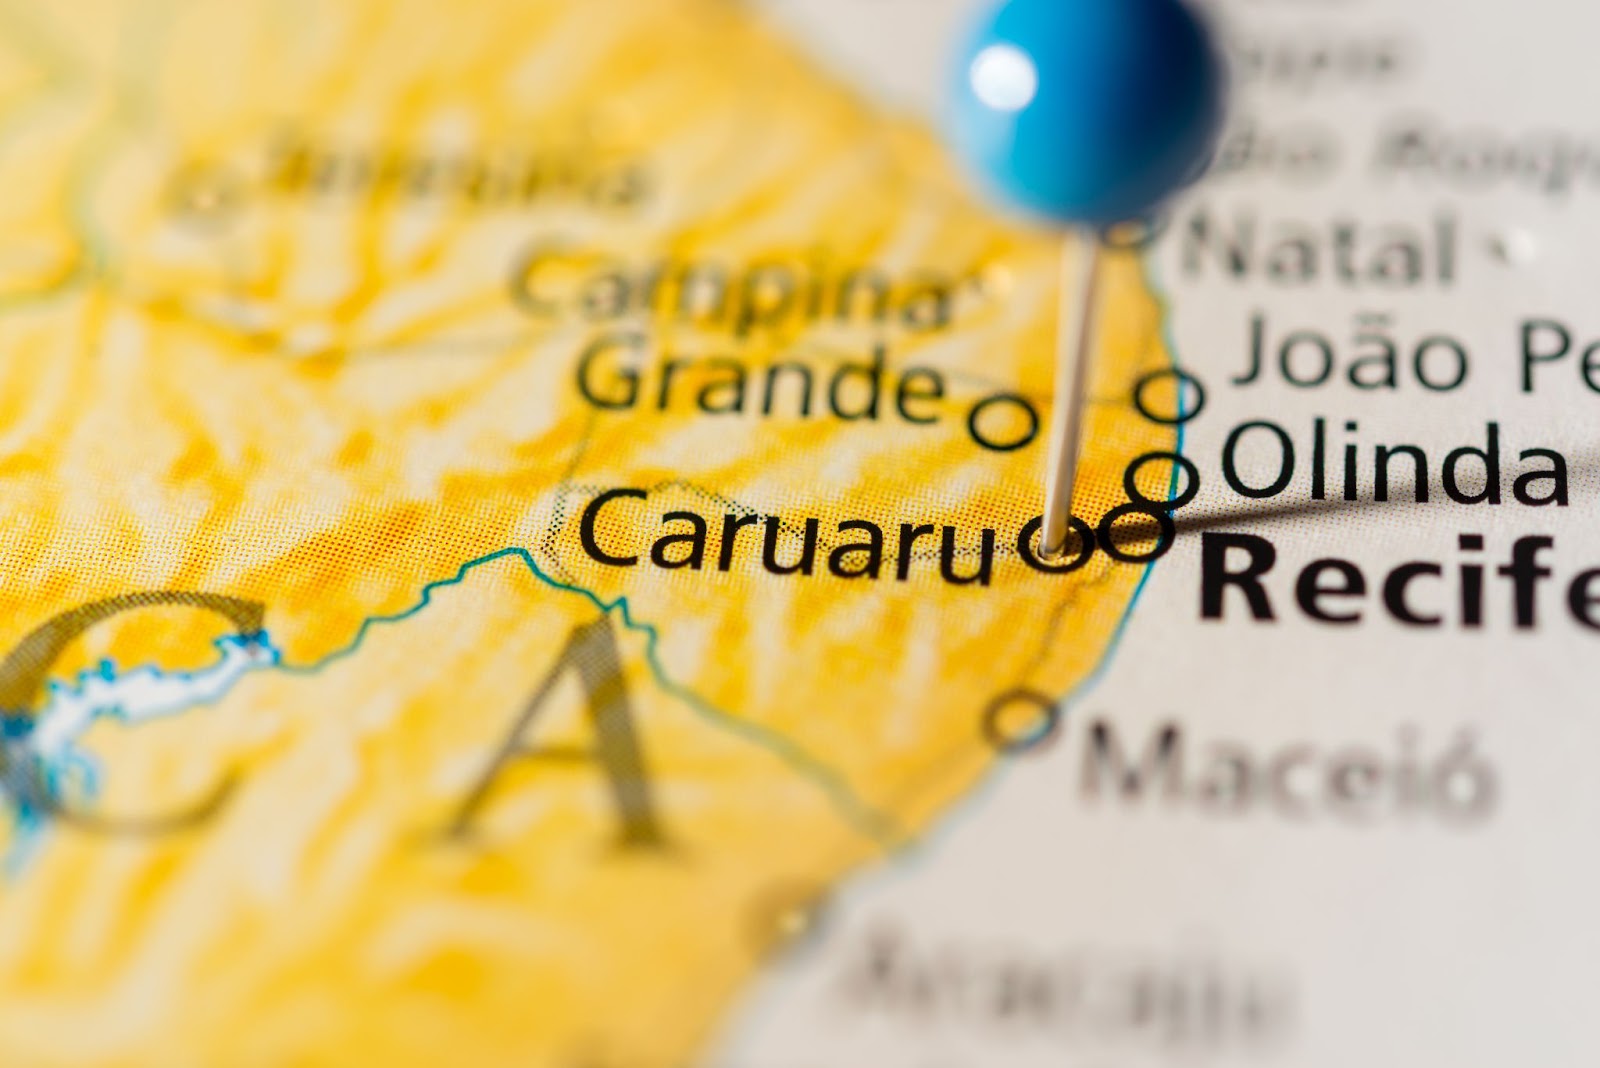 Alfinete azul marcando a localização de Caruaru em um mapa colorido do Brasil.